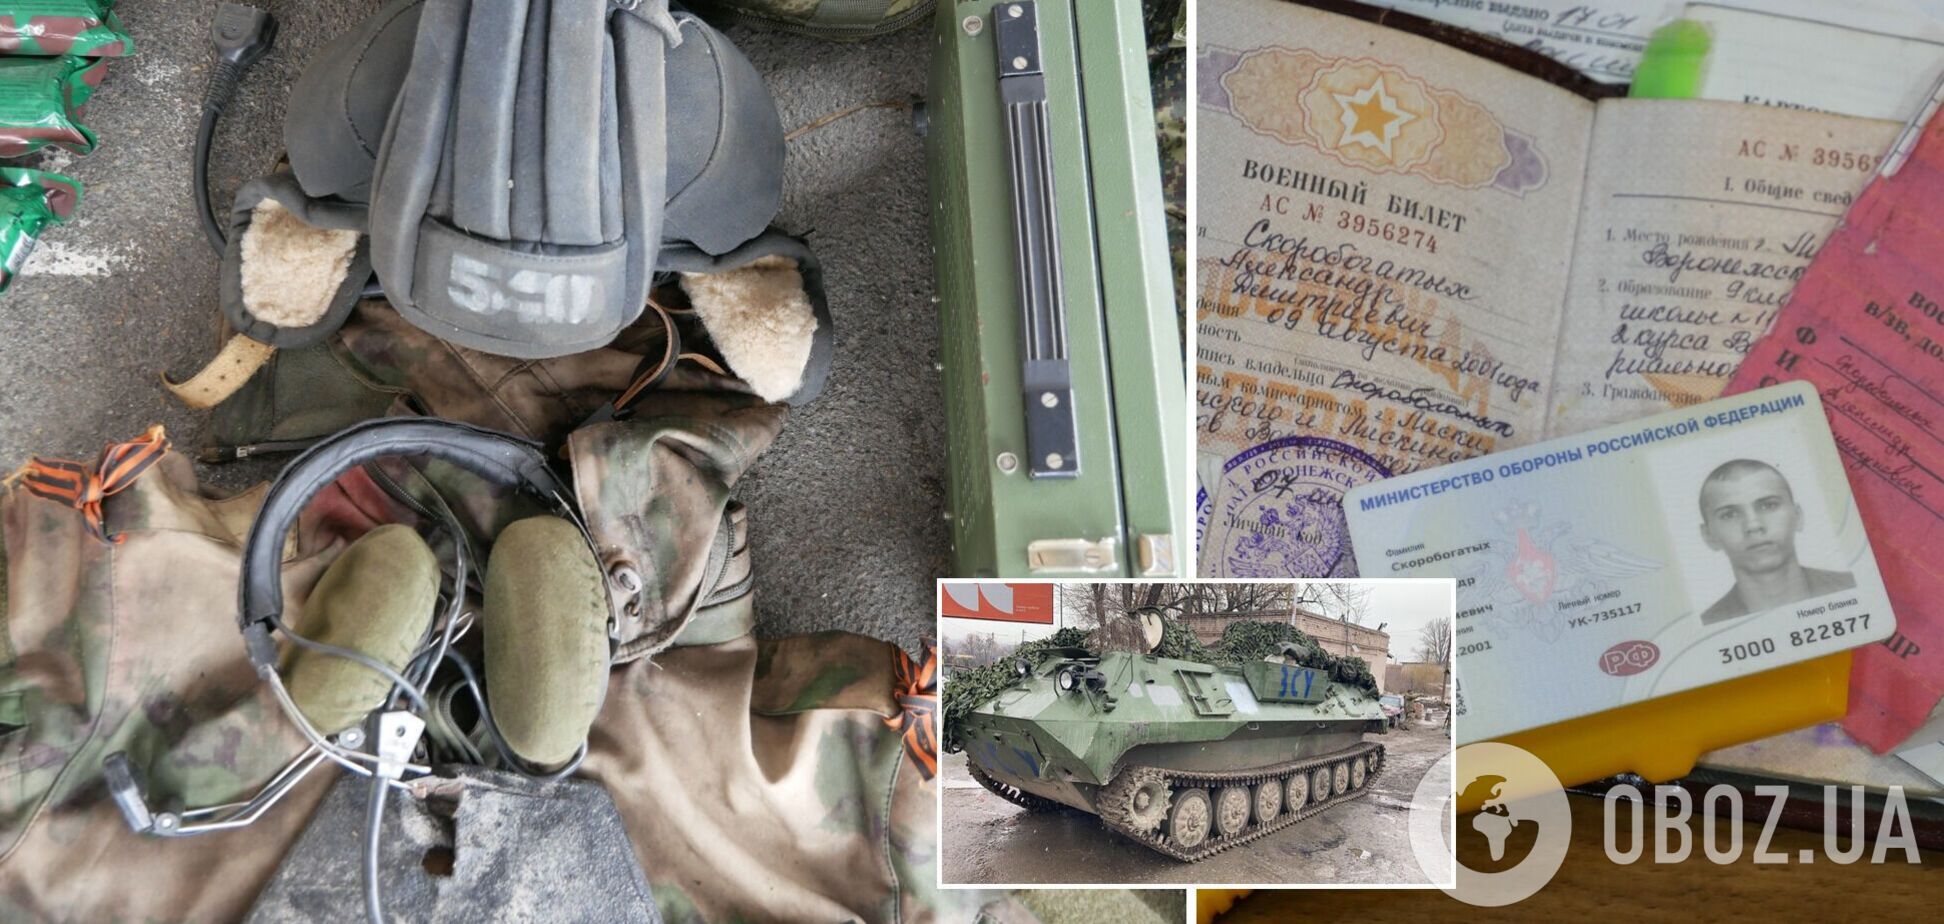 Українські розвідники захопили командно-штабну машину РФ із документами. Деталі та фото